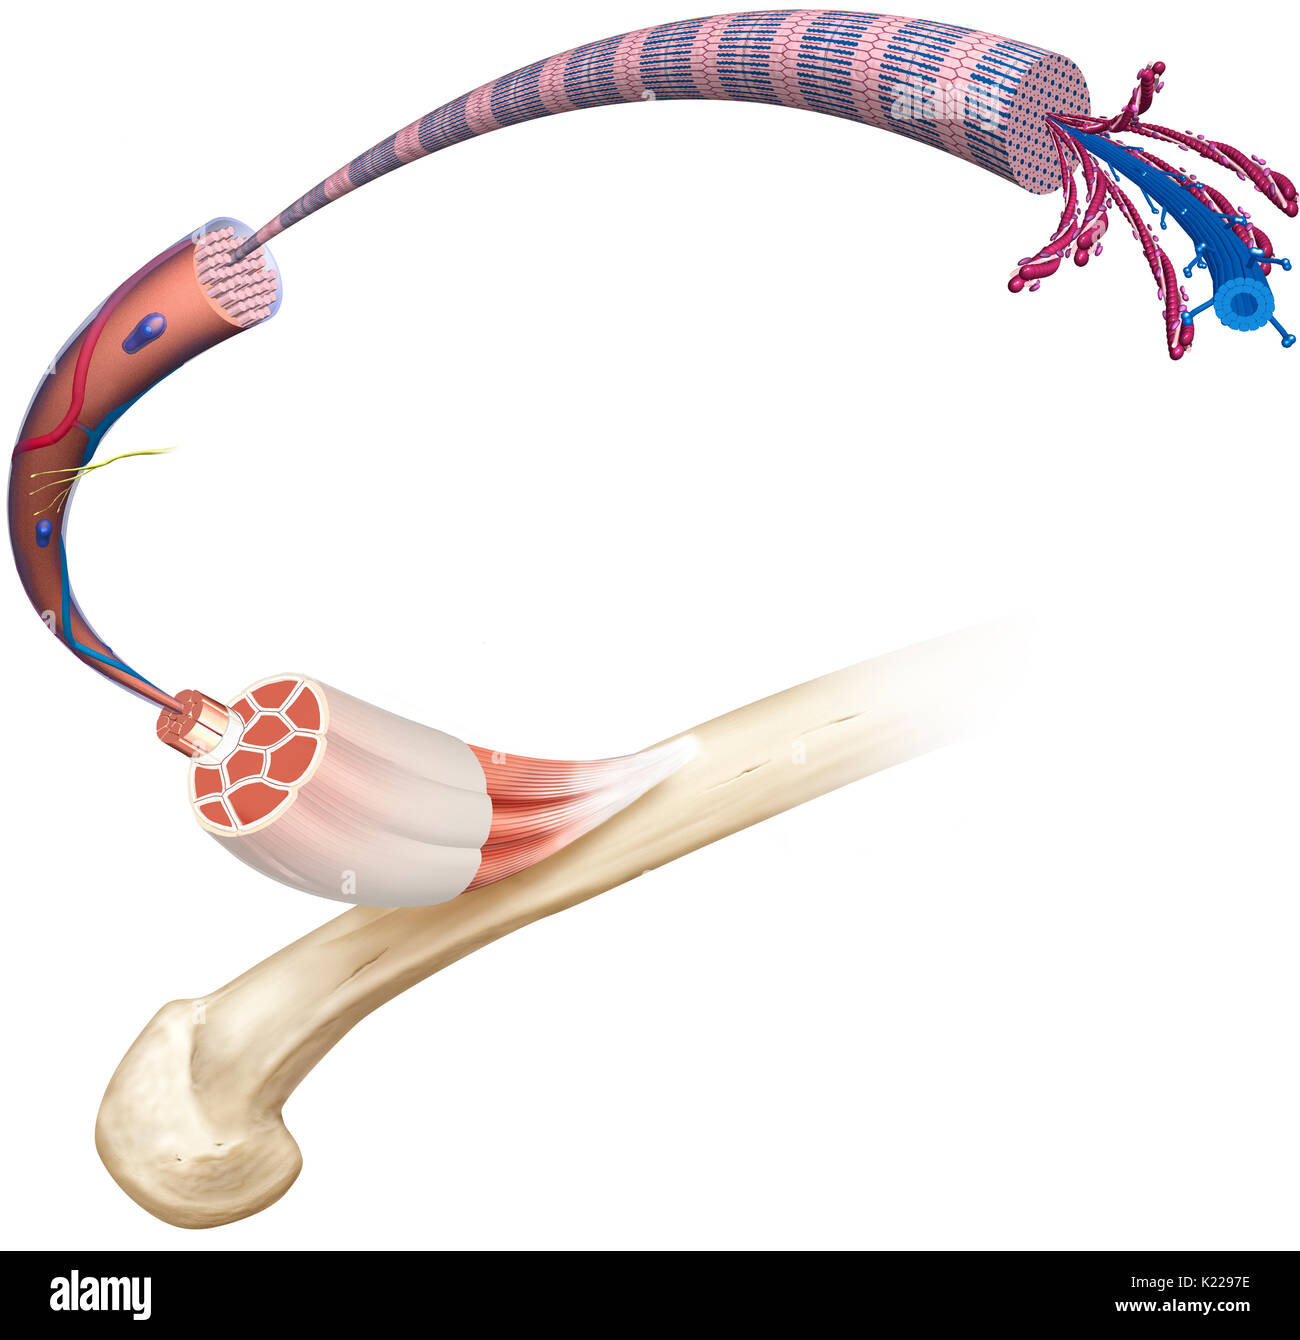 Dieses Bild zeigt die Struktur der Skelettmuskulatur, offenbart die Muskelfasern bündeln, der Motor Neuron, der Muskelfasern und der myofibril. Stockfoto